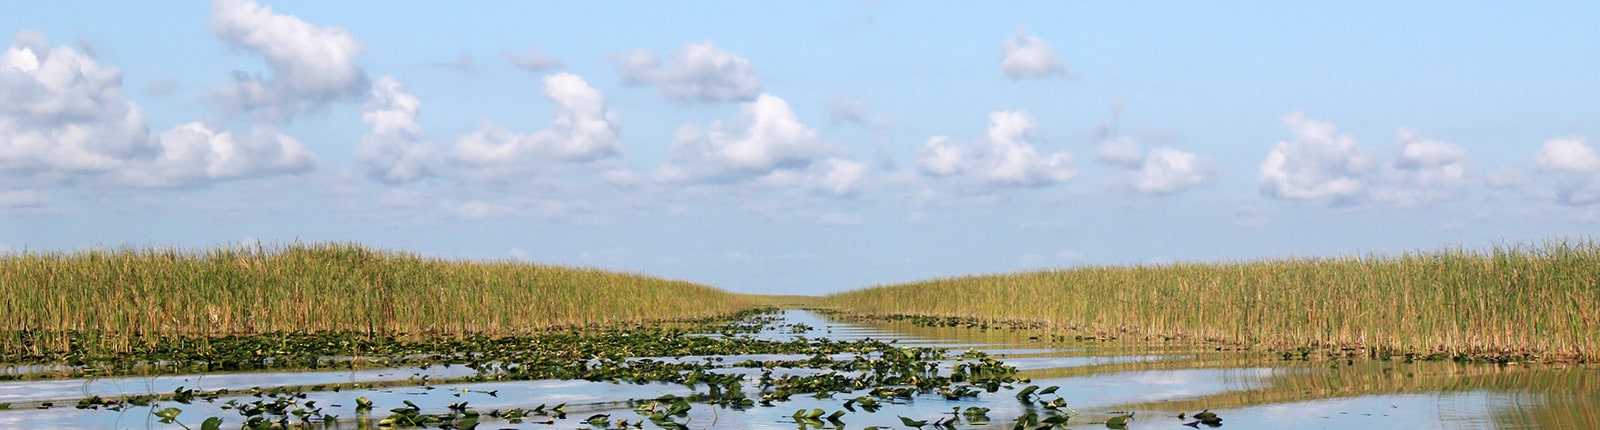 Natural landscape of the Everglades near Miami, FL